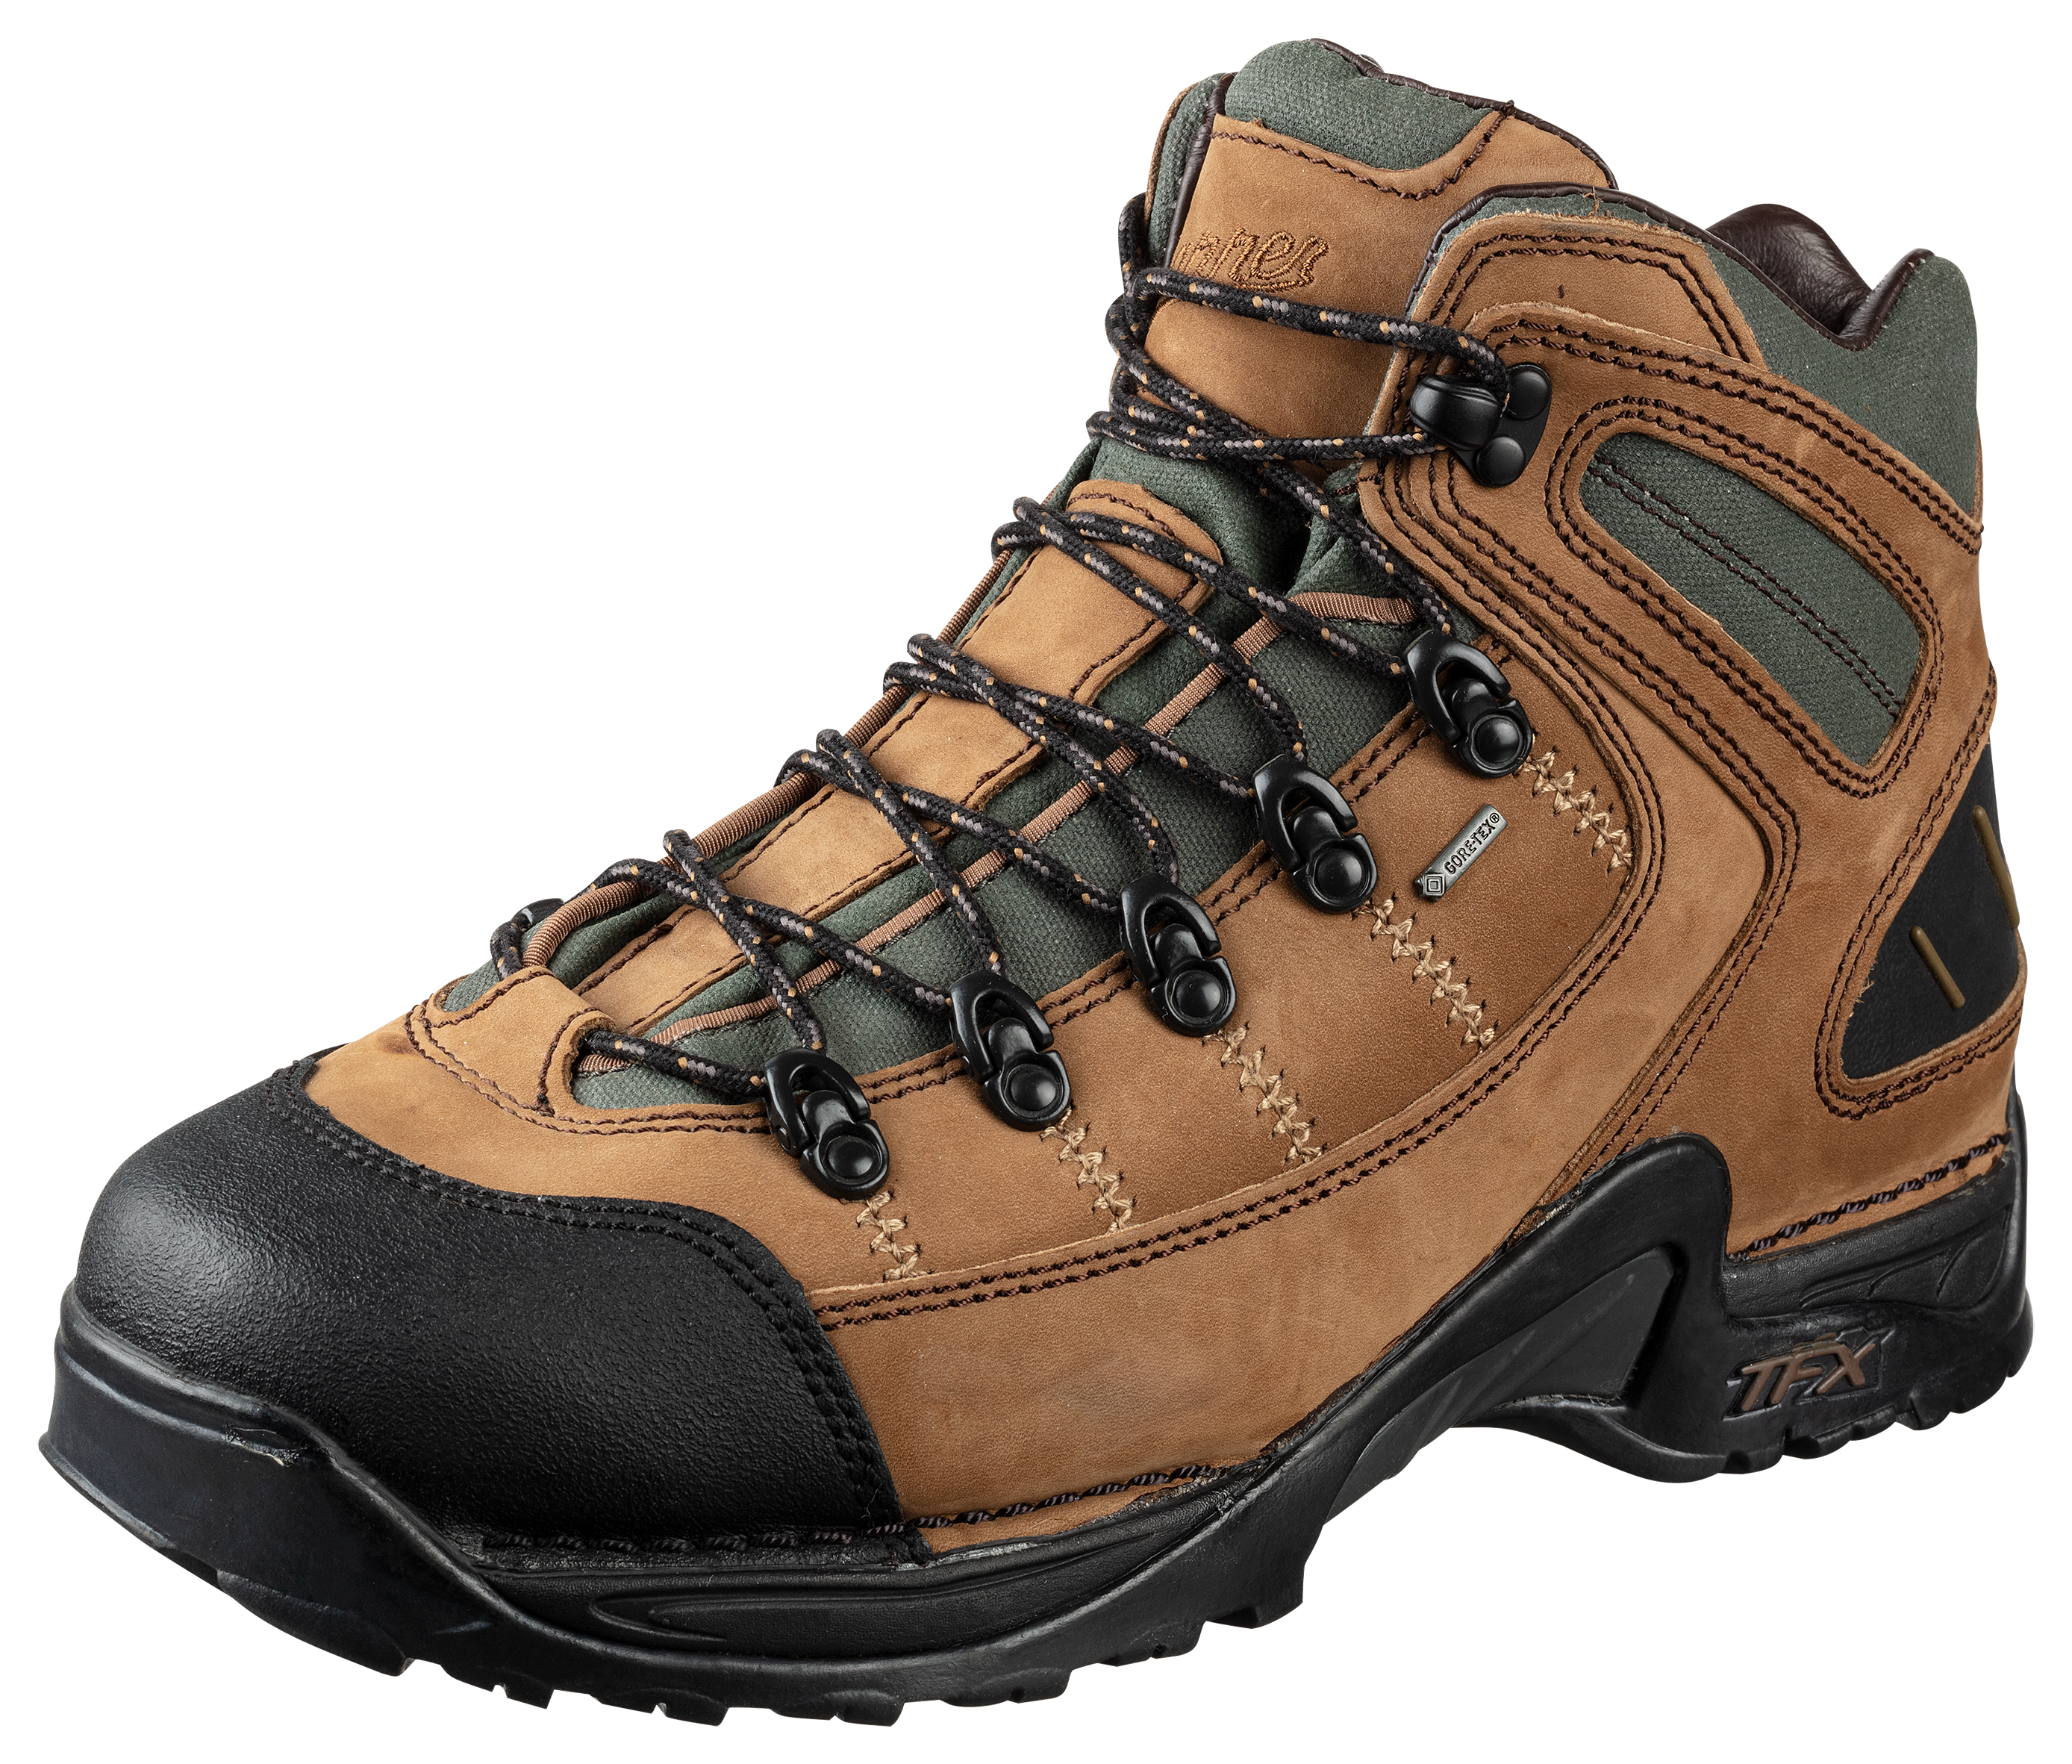 Danner 453 GORE-TEX Waterproof Hiking Boots for Men - Dark Tan - 9.5W